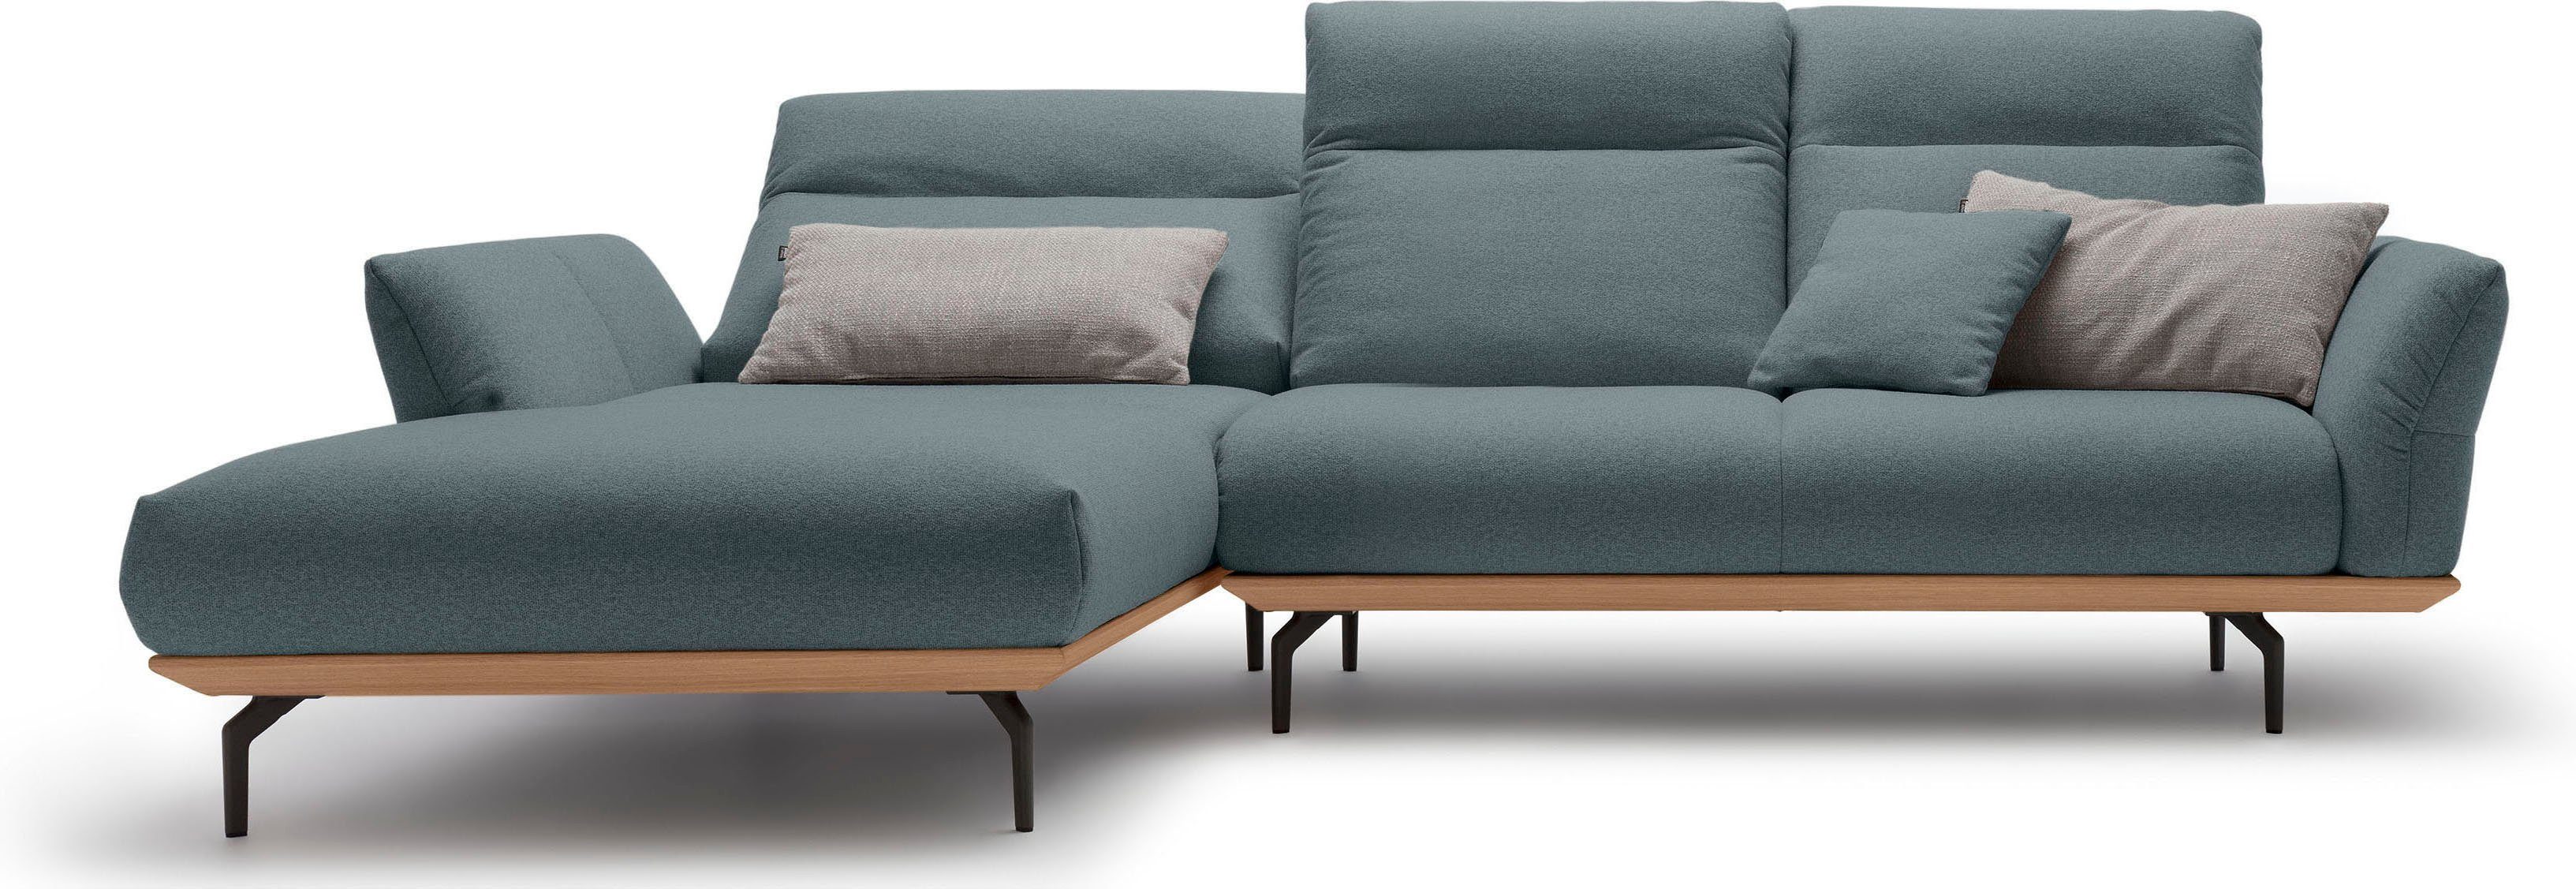 huelsta sofa hoekbank hs.460 sokkel in eiken, gegoten aluminium poten in umbra grijs, breedte 298 cm blauw